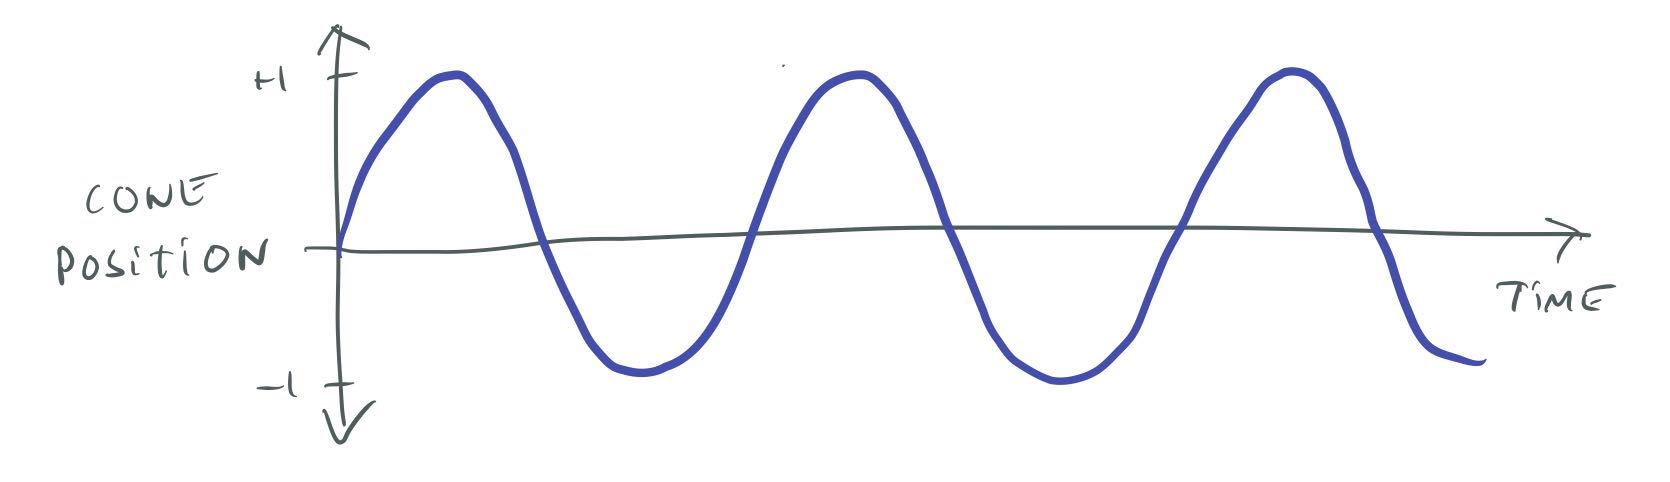 440 Hz sine wave.